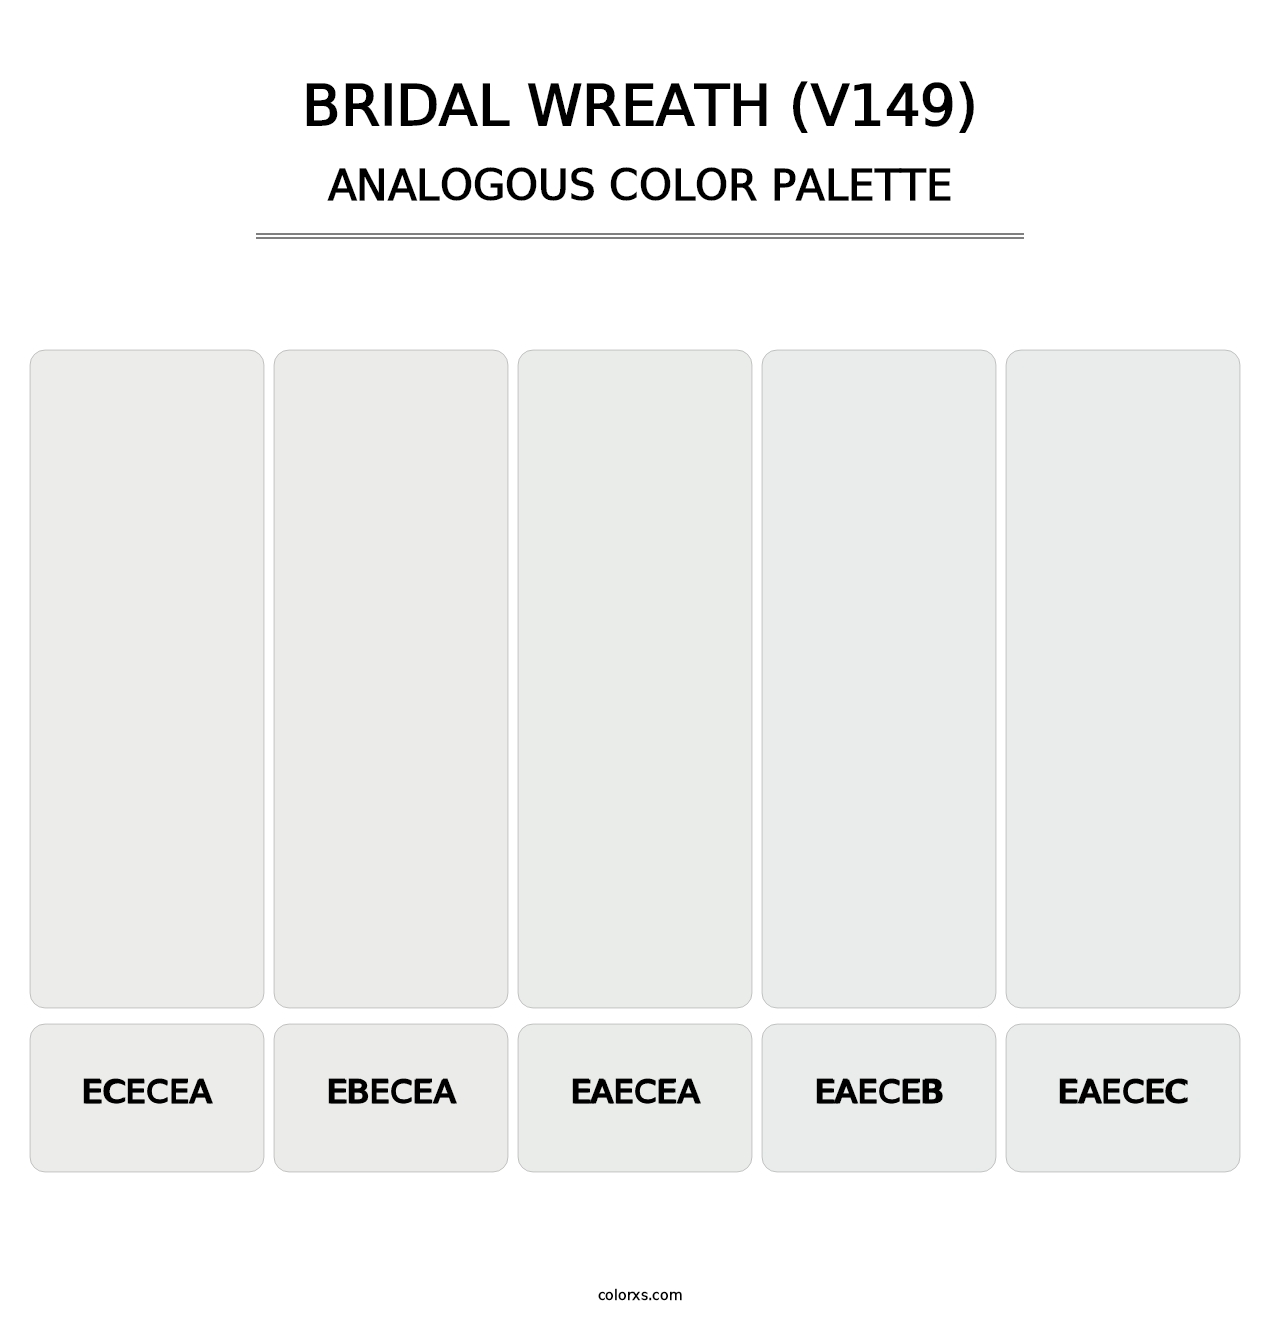 Bridal Wreath (V149) - Analogous Color Palette